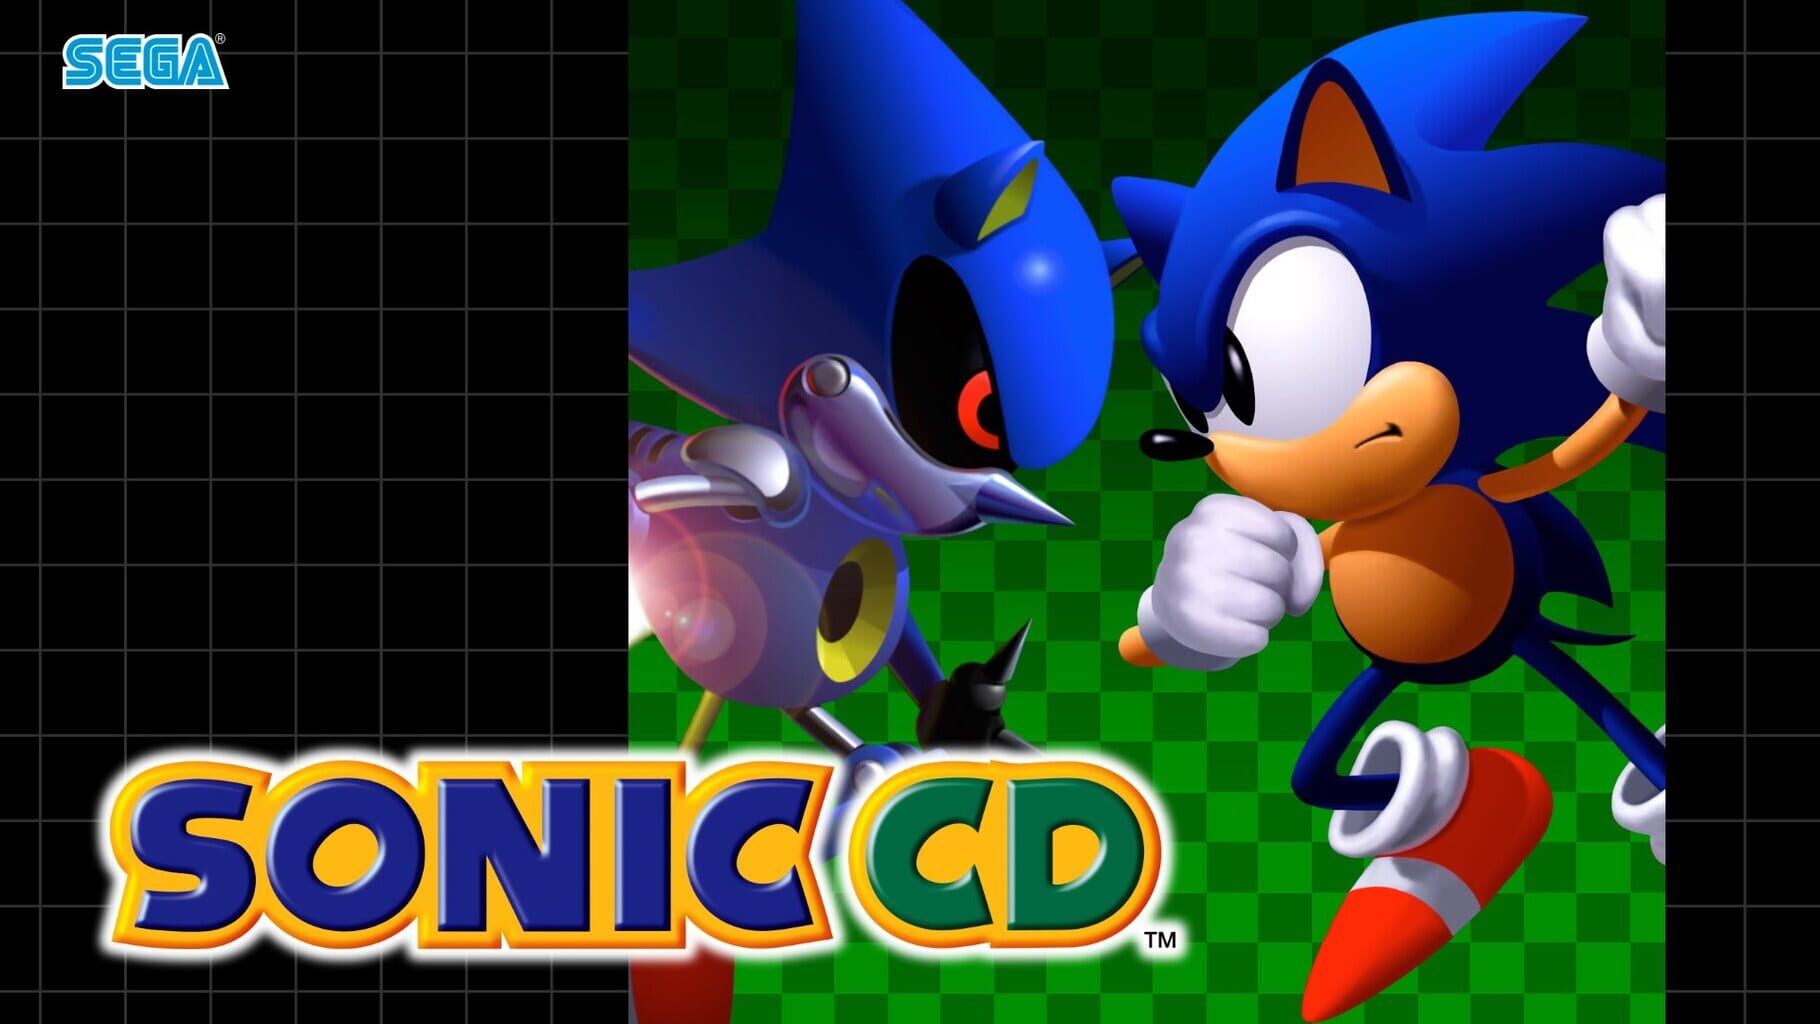 Arte - Sonic CD